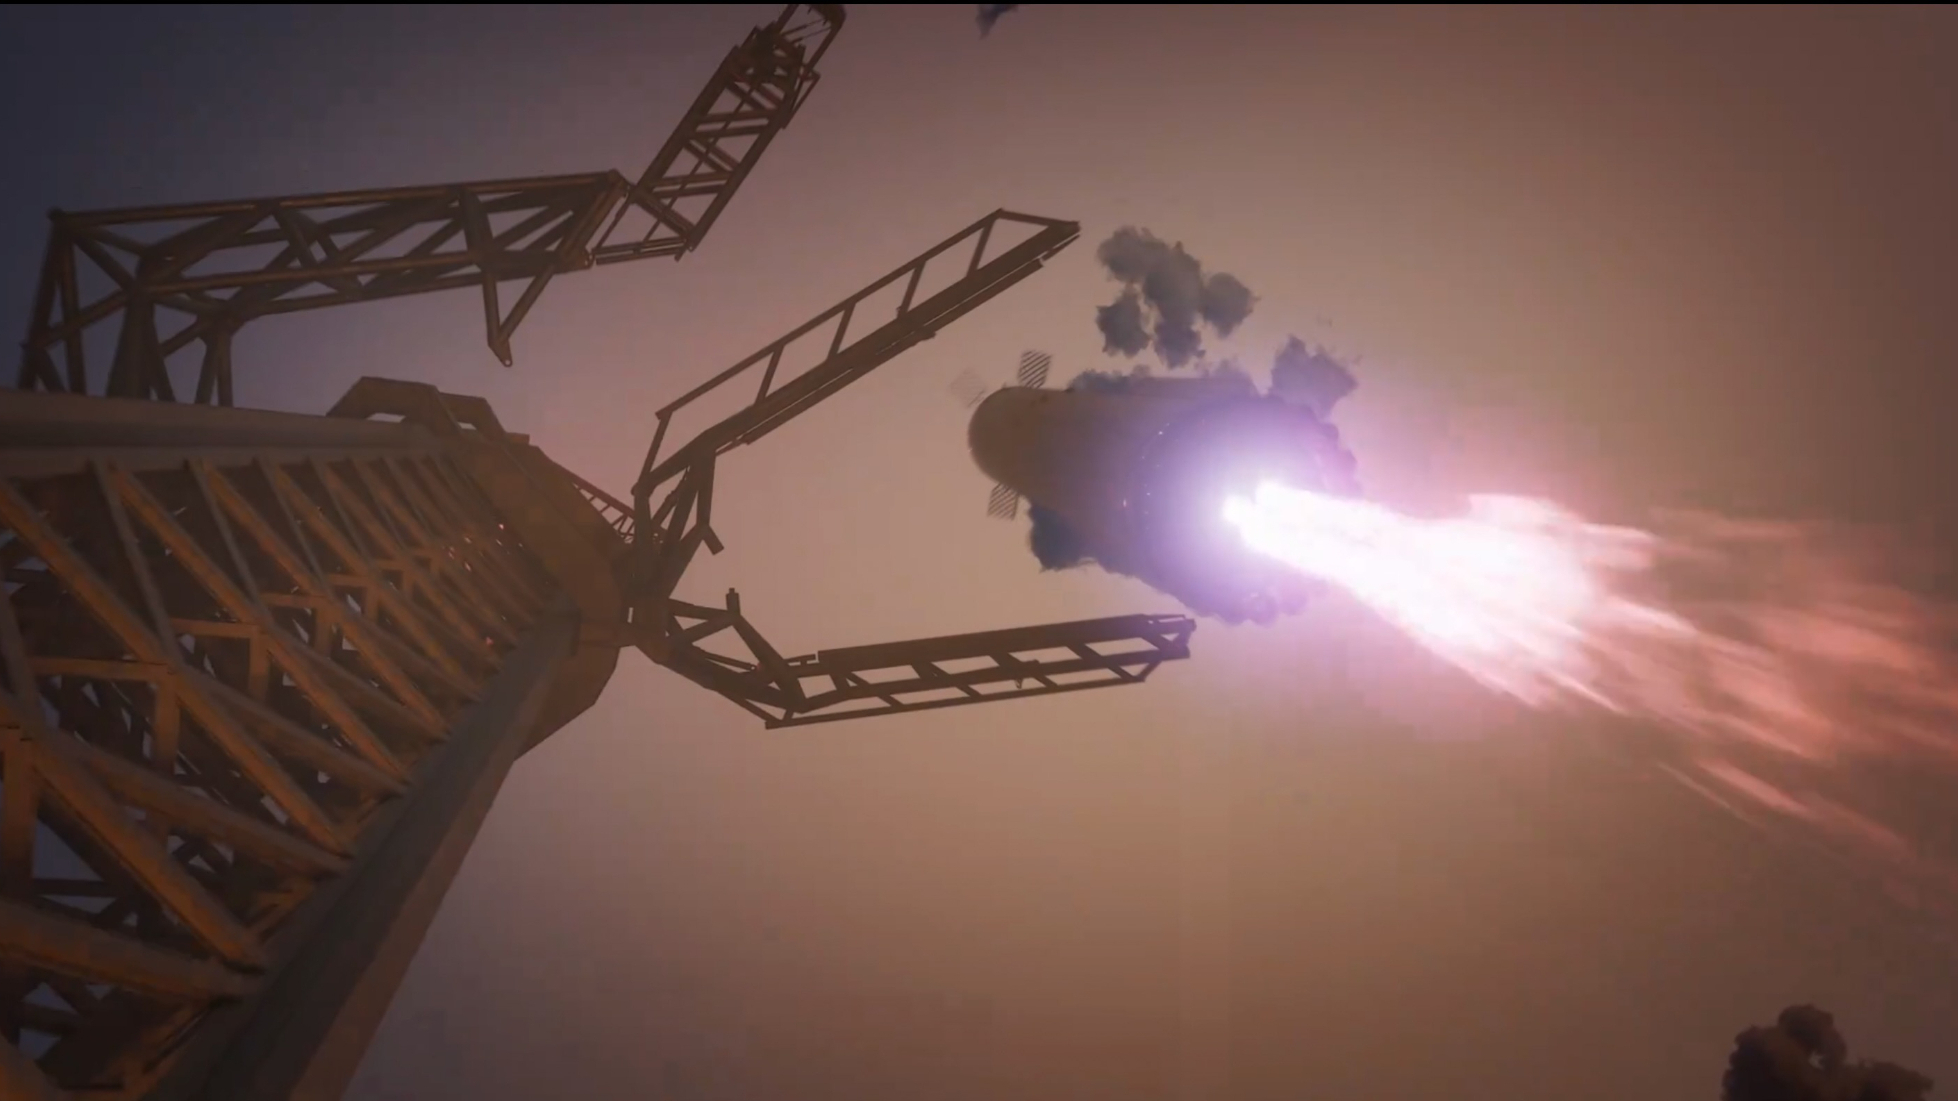 Το SpaceX επιδεικνύει την ικανότητά του να σηκώνει έναν πύραυλο Super Heavy χρησιμοποιώντας chopsticks στην επερχόμενη δοκιμαστική πτήση Starship (βίντεο)